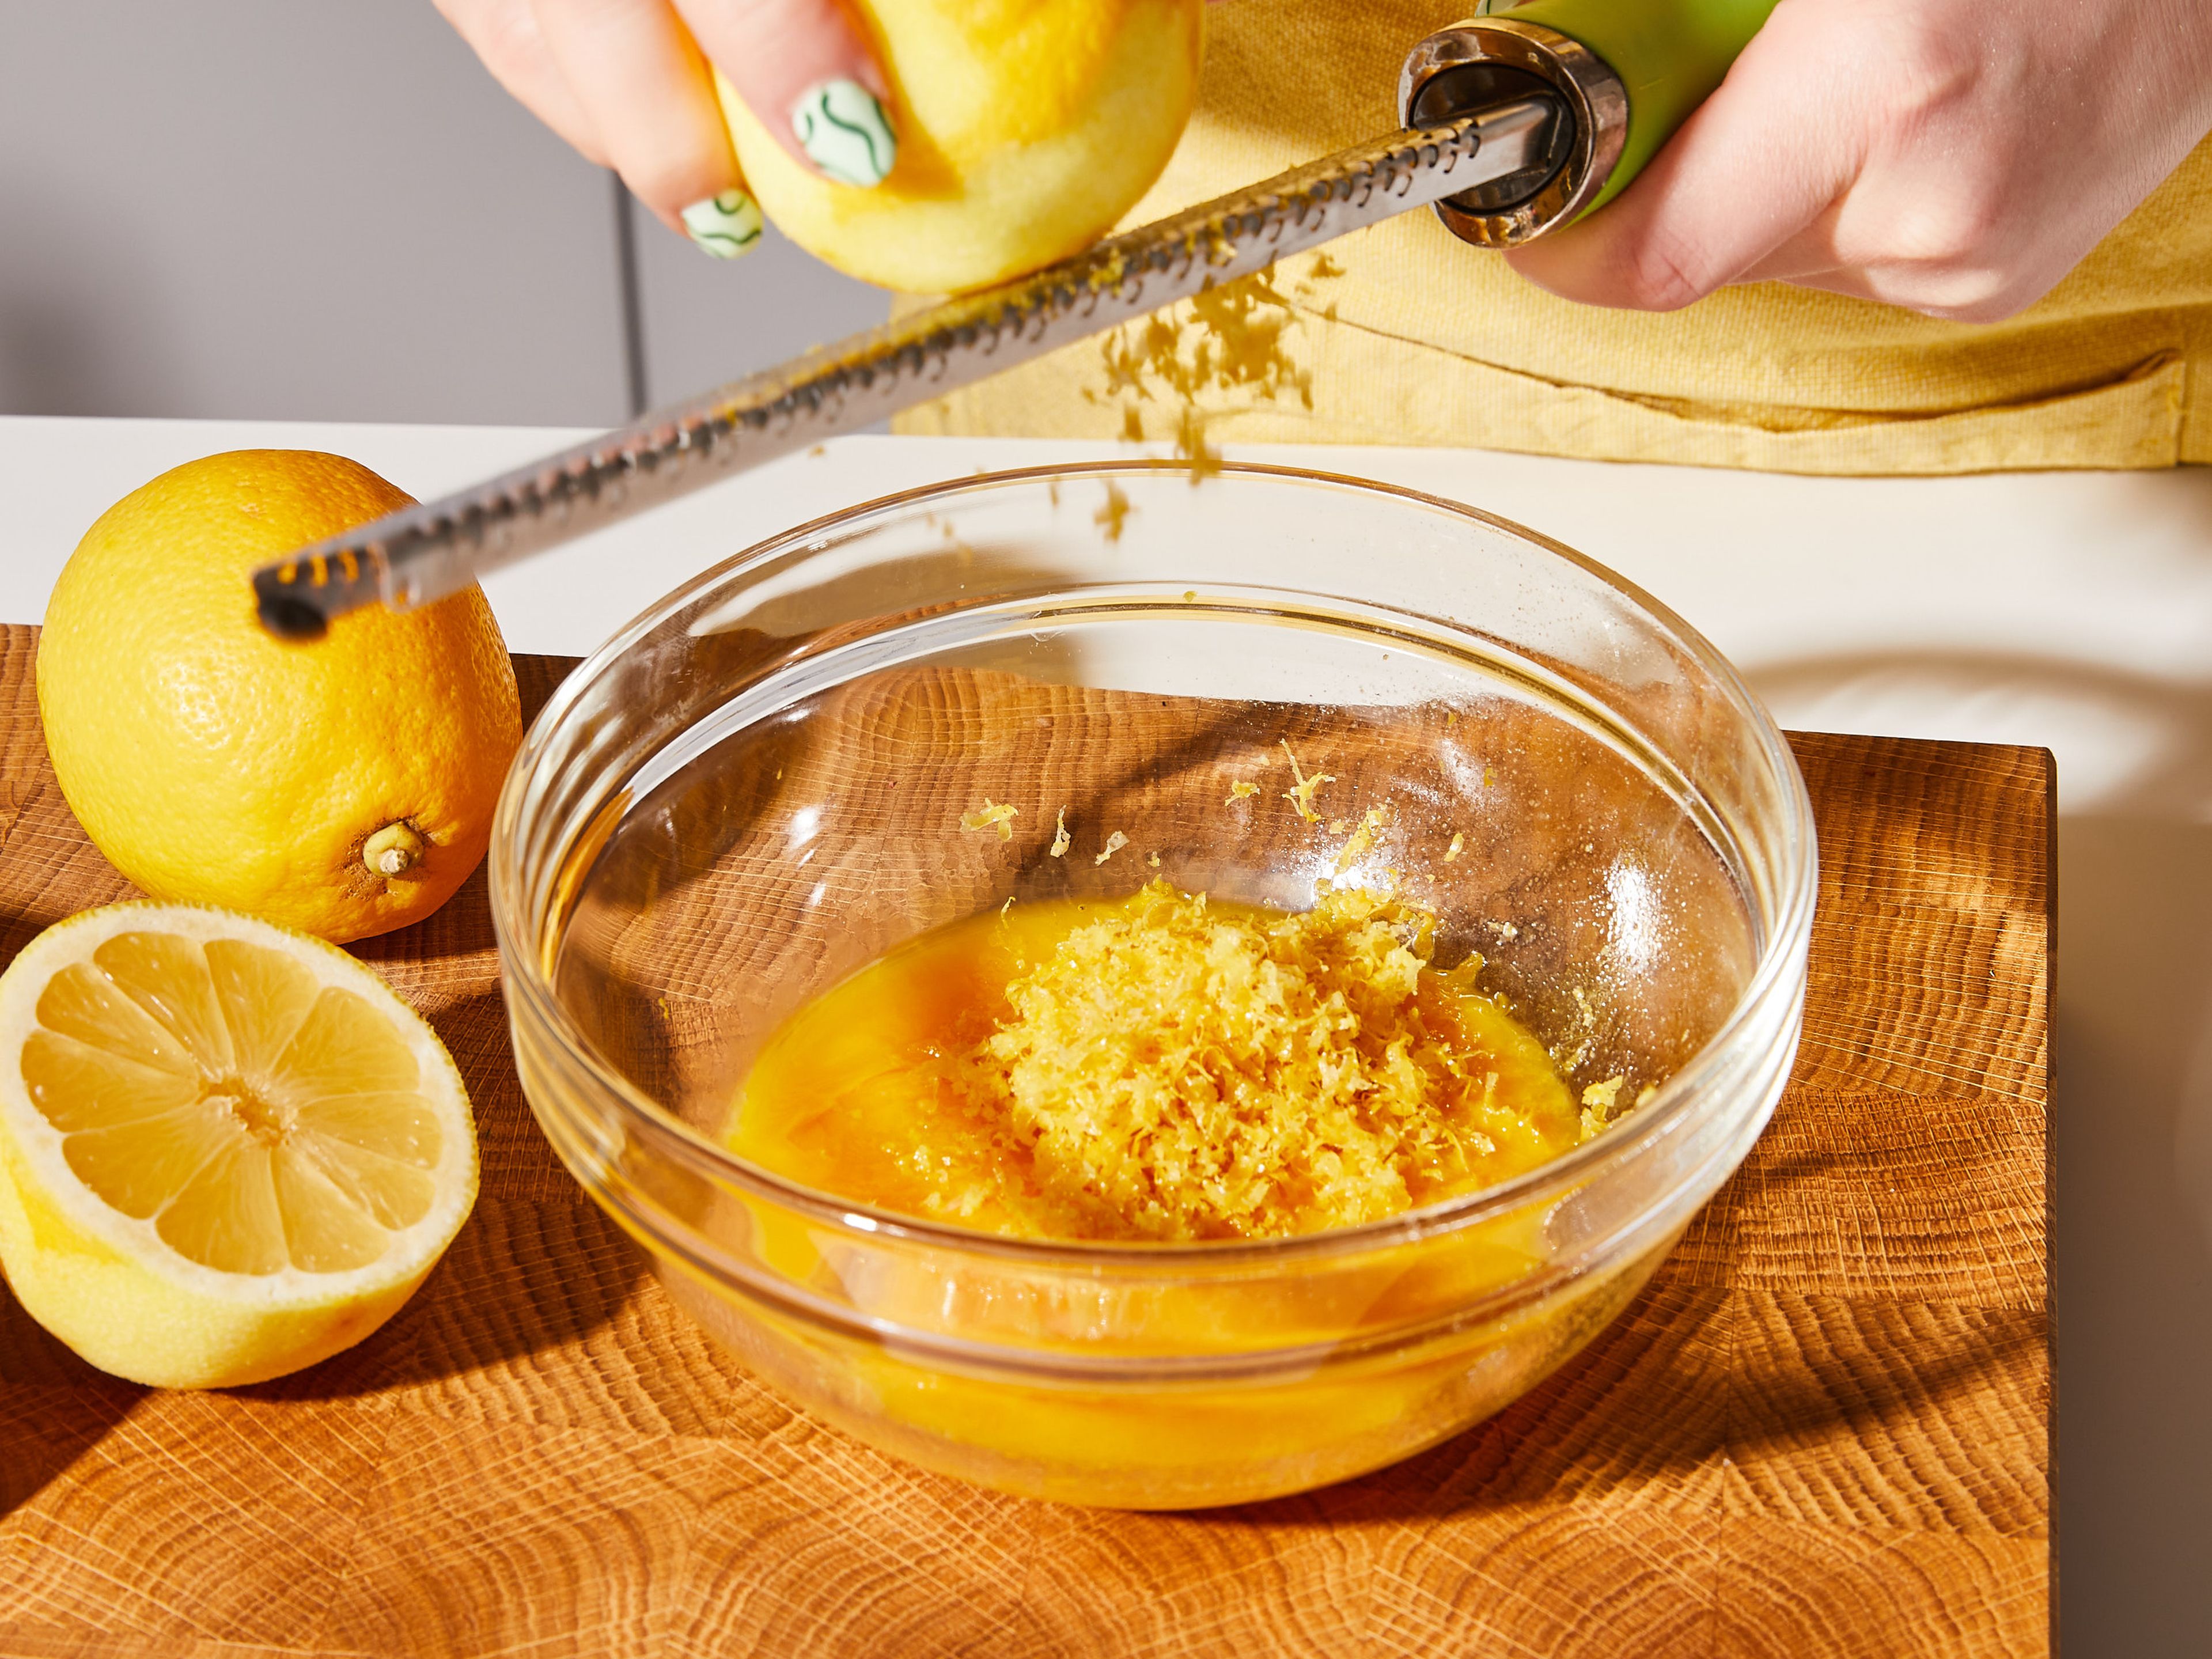 Für die Füllung, zuerst die Zitronen abreiben und entsaften. Das Eigelb vom Eiweiß trennen und das Eiweiß für die Baisermasse aufbewahren. In einer mittelgroßen Schüssel die Eigelbe mit dem Zitronensaft und dem Abrieb verquirlen. Ein Drittel des Zuckers, den Großteil der Speisestärke und das Wasser in einen mittelgroßen Topf geben und bei mittlerer Hitze unter ständigem Rühren zum Kochen bringen, bis die Masse sehr dickflüssig ist. Dann vom Herd nehmen. Um zu vermeiden, dass die Mischung sich trennt, die Ei-Zitronen-Mischung vorsichtig auf dieselbe Temperatur bringen. Dazu ¼ der heißen Mischung hinzufügen und unter ständigem Rühren einarbeiten.